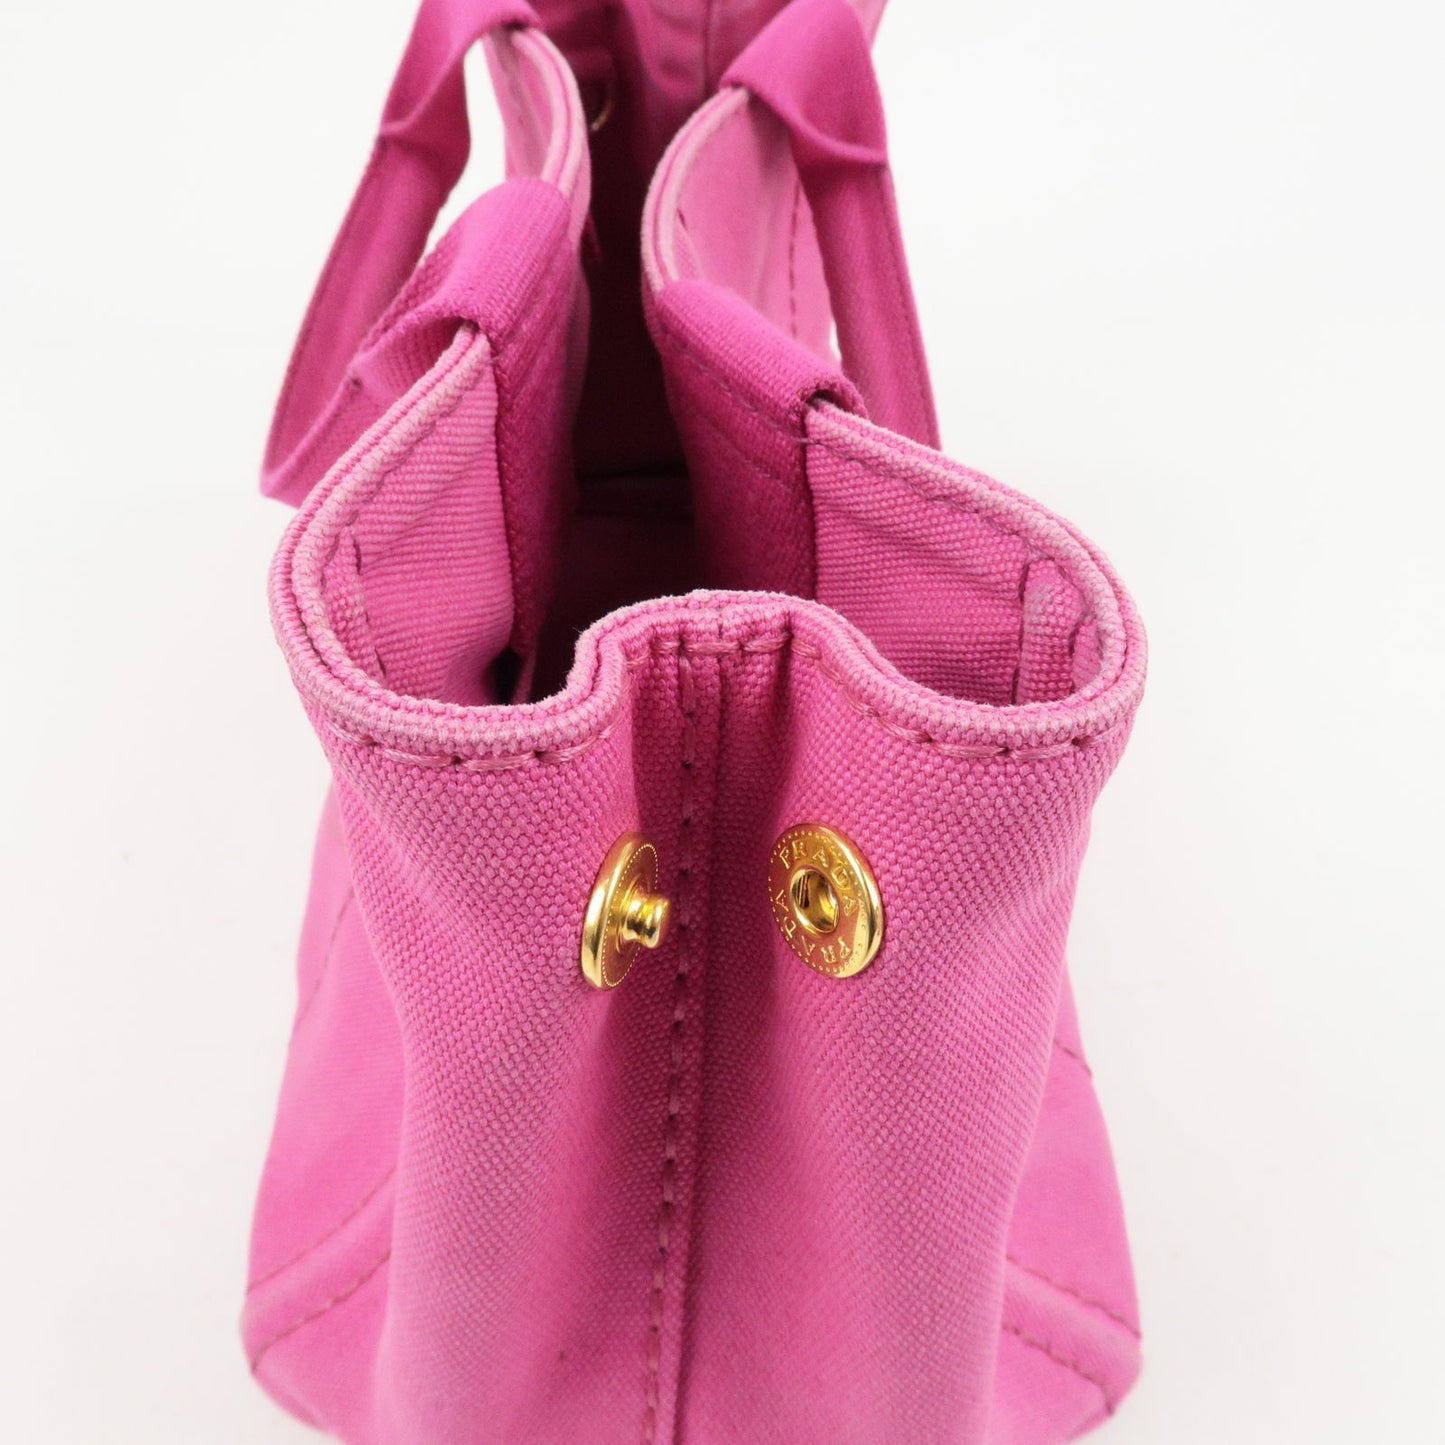 PRADA Canapa Mini Canvas 2Way Bag Shoulder Bag Hand Bag Pink